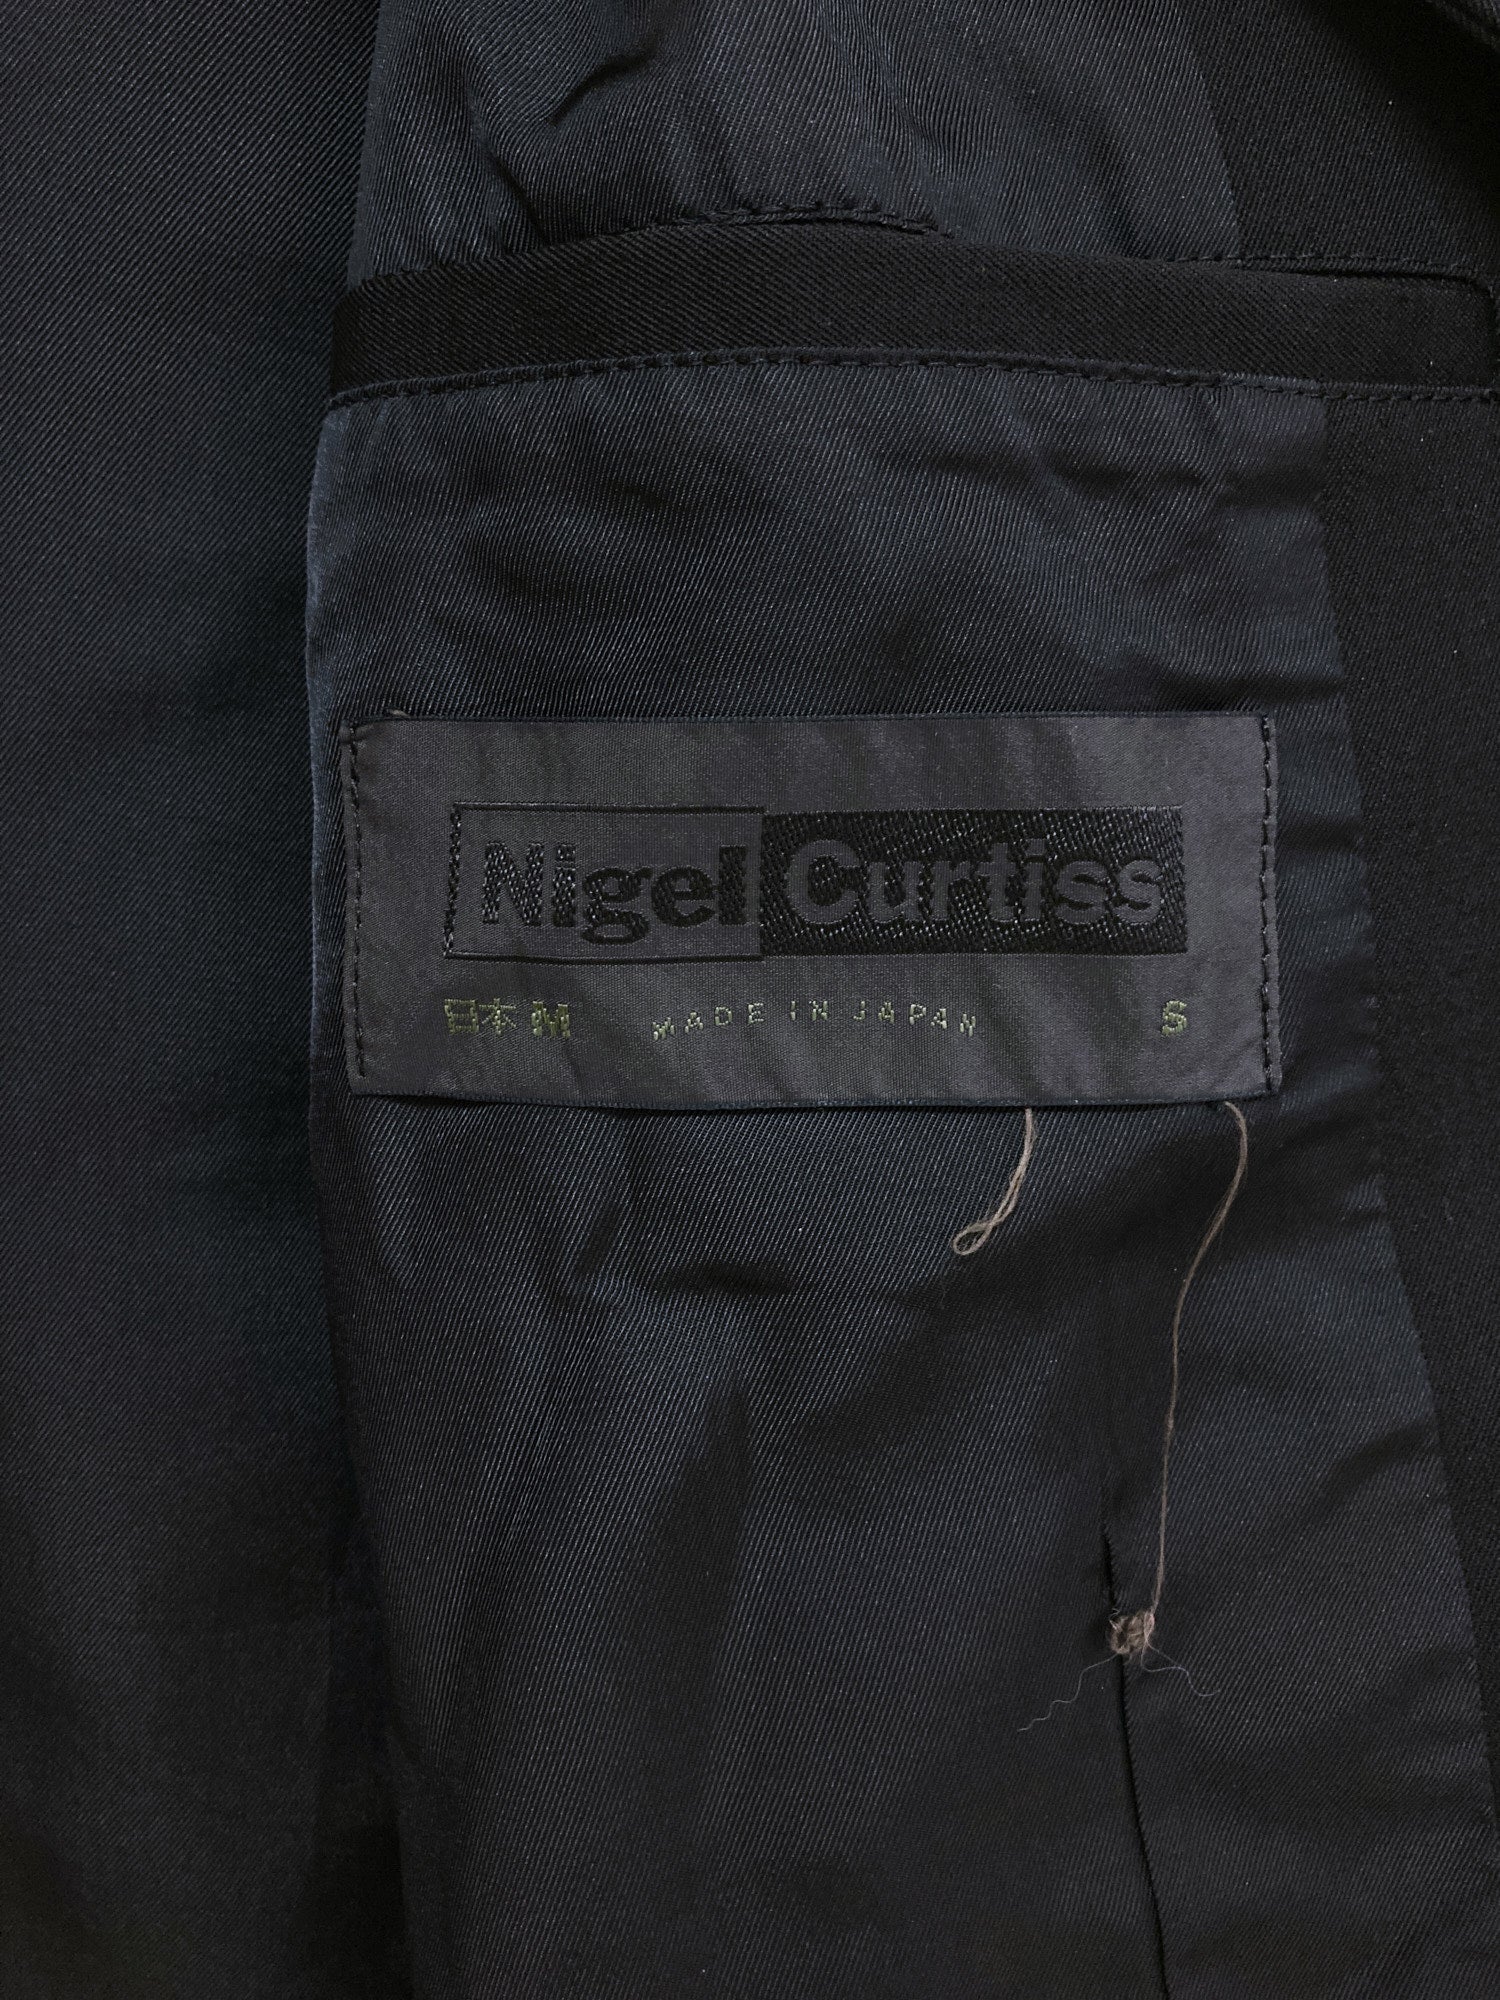 Nigel Curtiss 1990s black wool gabardine cropped work jacket - mens S